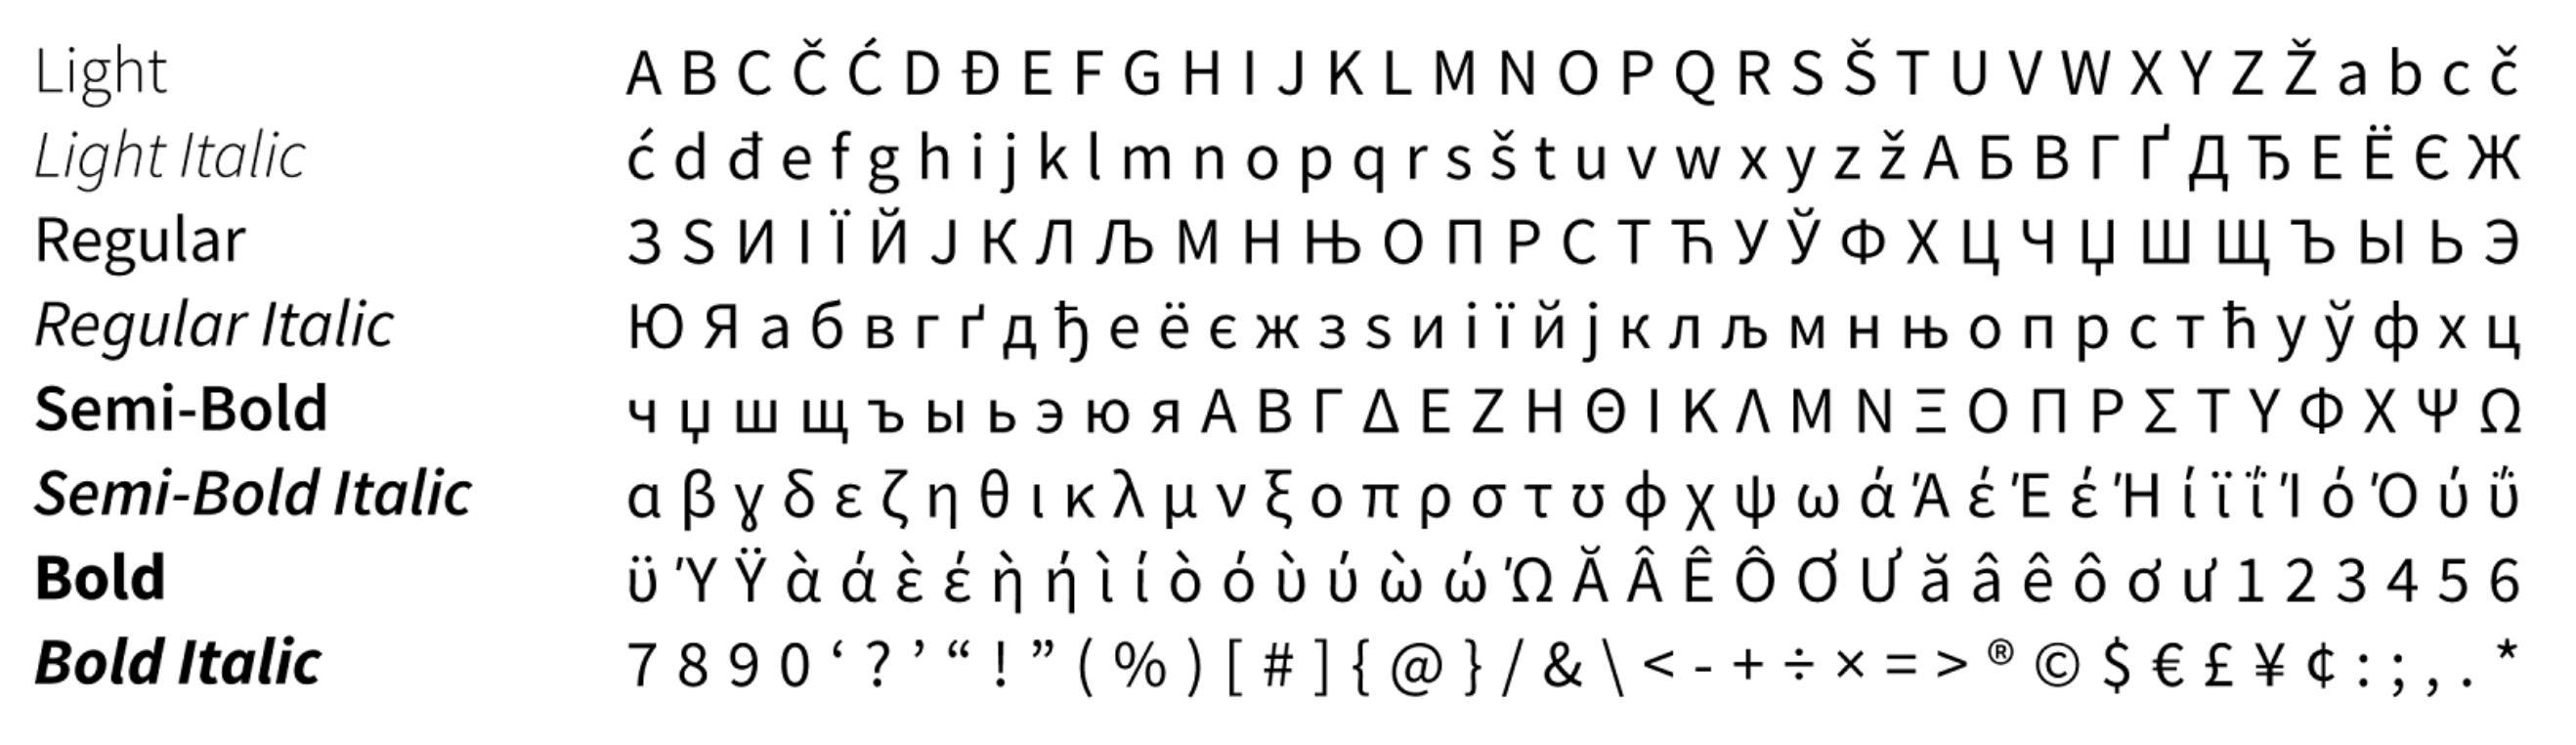 beqom brand typography - Source Sans Pro